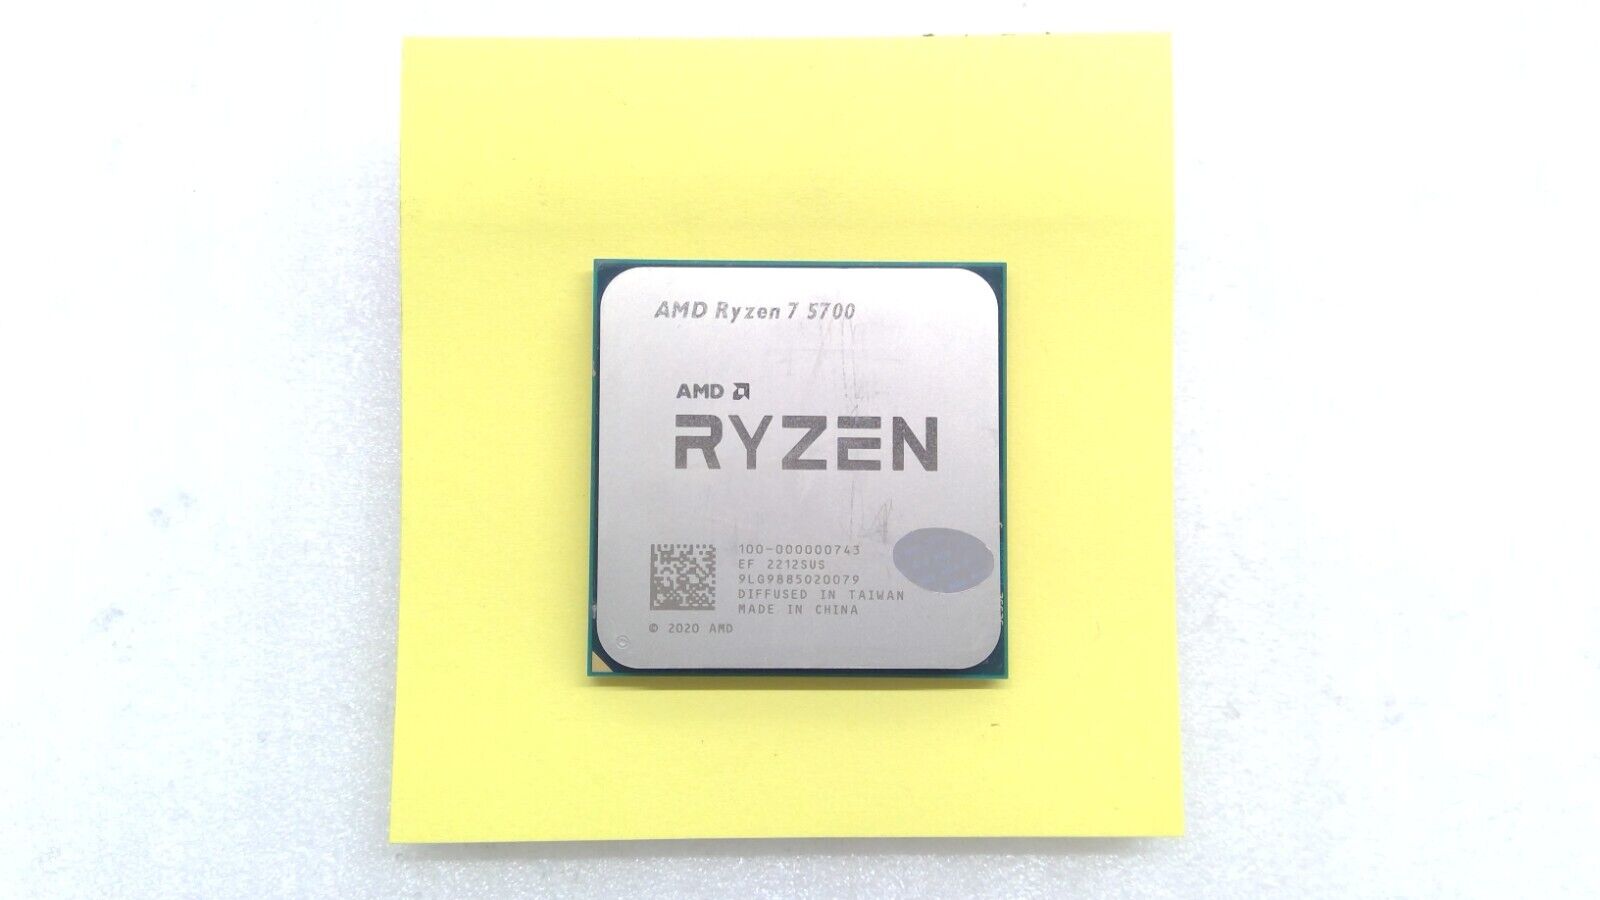 AMD Ryzen 7 5700 CPU Processor (3.7GHz, 8 Cores, Socket AM4)